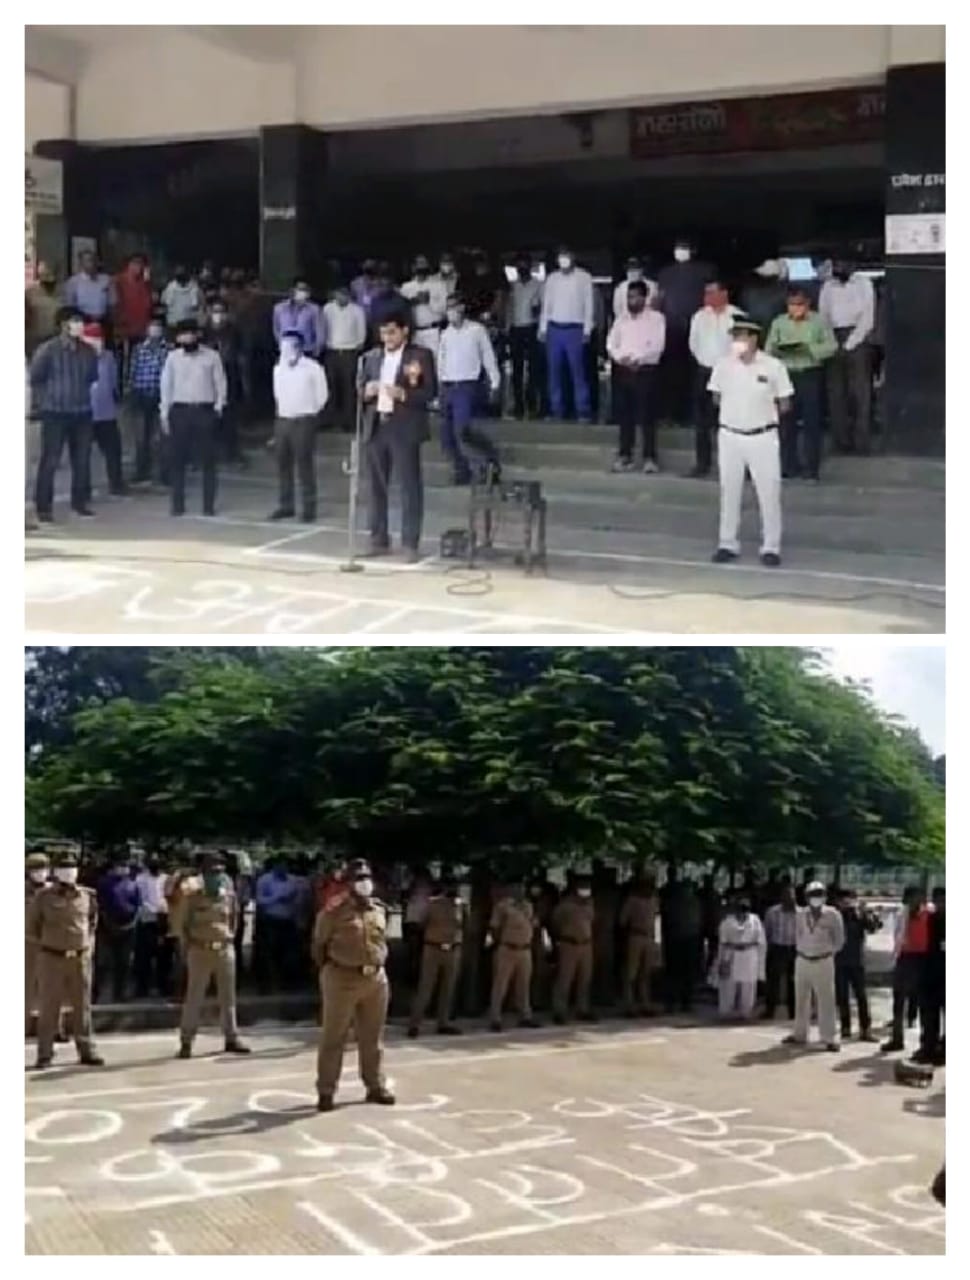 मिर्जापुर रेलवे स्टेशन पर स्टेशन अधीक्षक ने स्वतंत्रता दिवस के मौके पर किया ध्वजारोहण